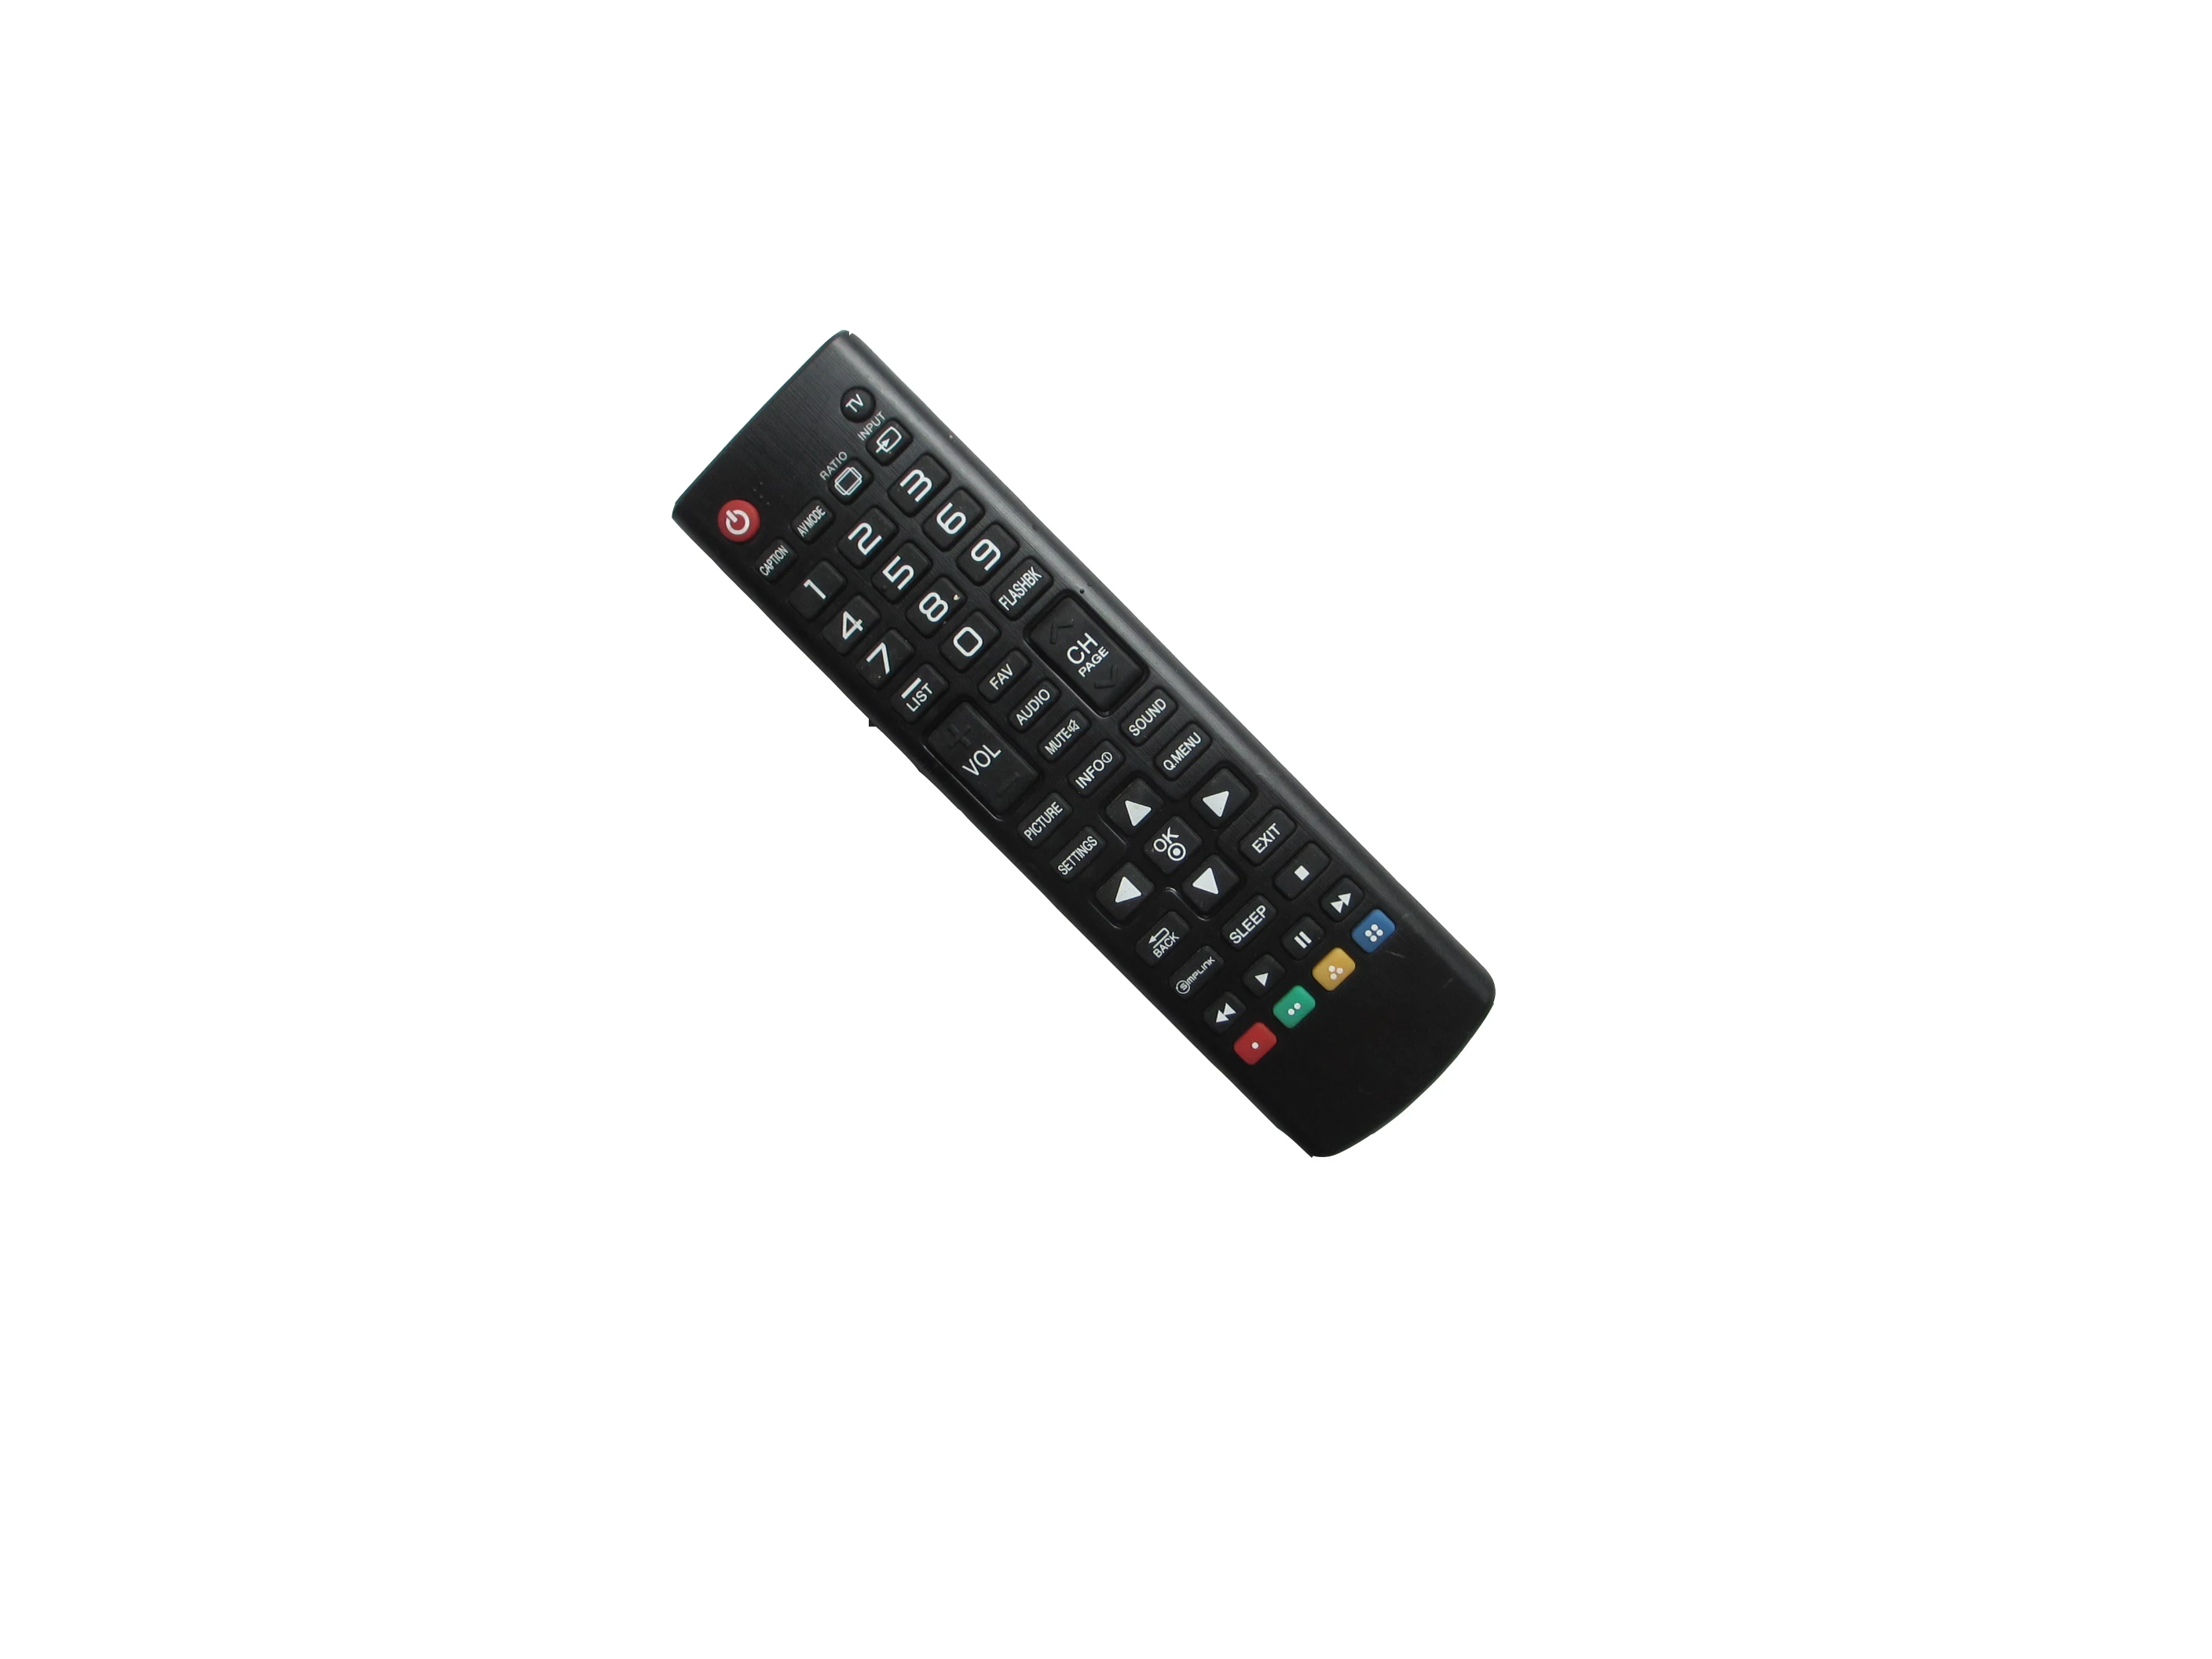 

Remote Control For LG 32LN540U 42LN540U 47LN540U 50LN540U 55LN540U 60LN540U 32LN5403 32LN5404 42LN5404 37LN5405 LED HDTV TV